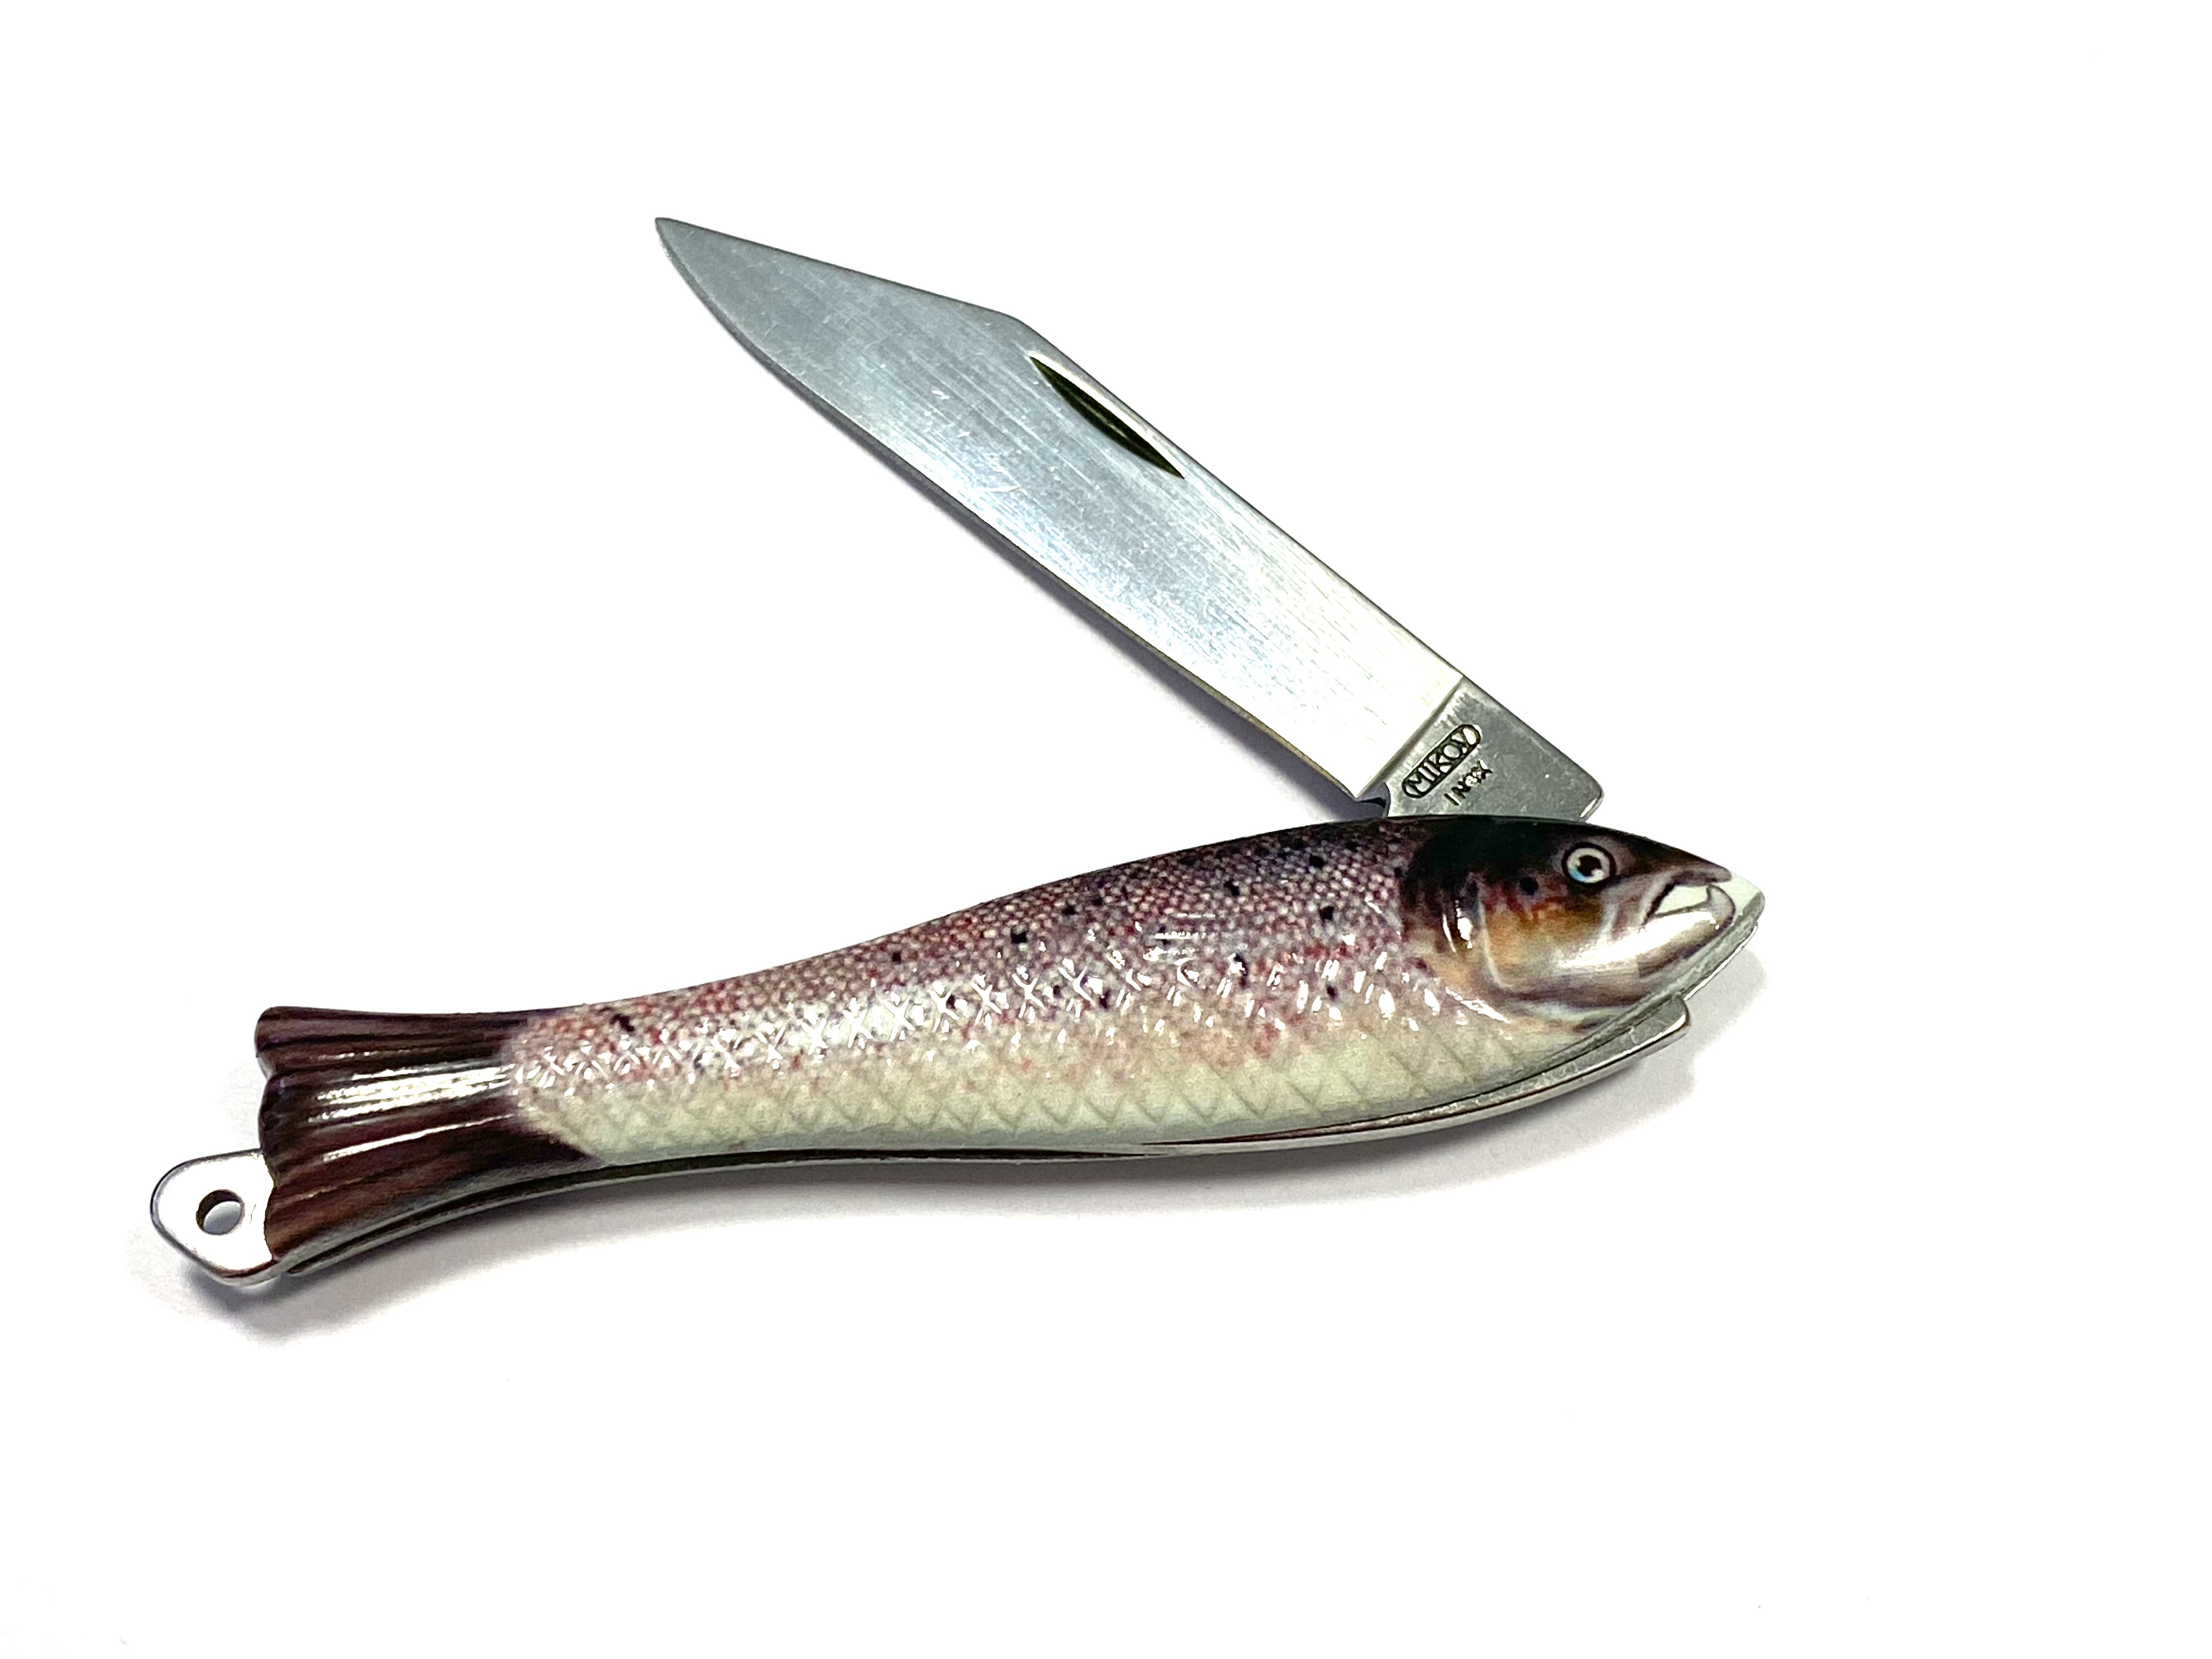 Kapesní nožík Rybička v lososím provedení